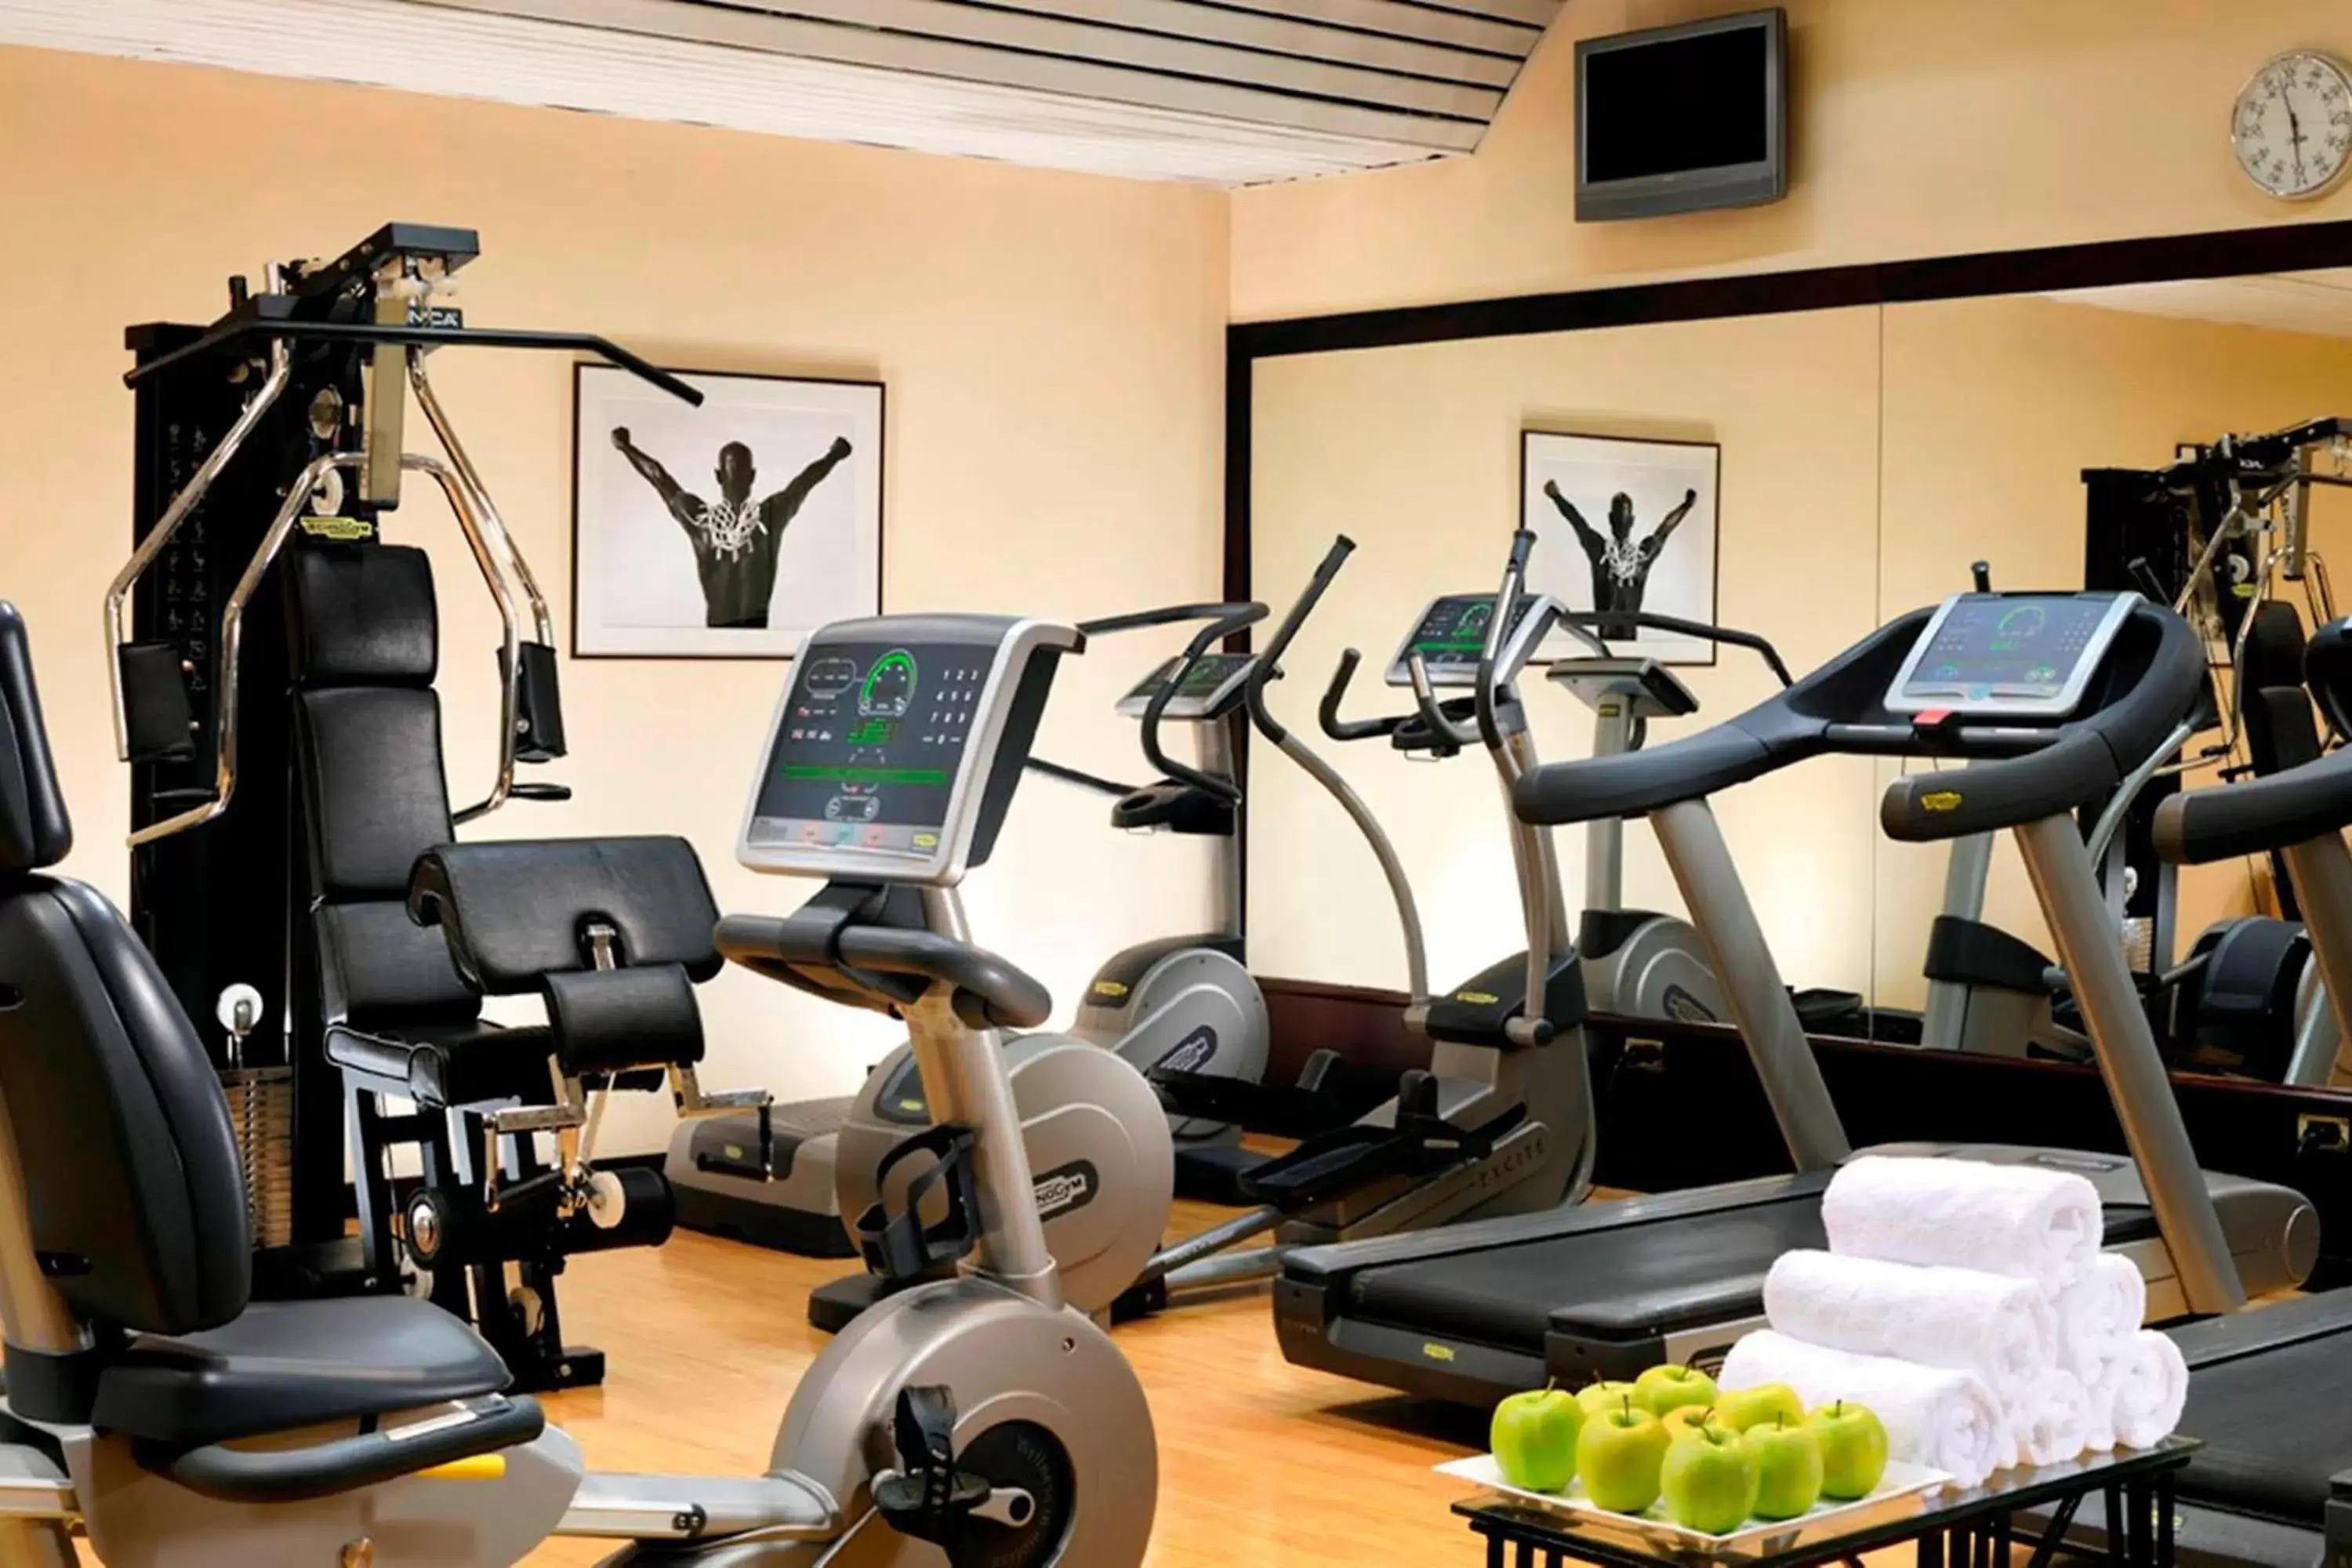 Fitness centre/facilities, Fitness Center/Facilities in Milan Marriott Hotel